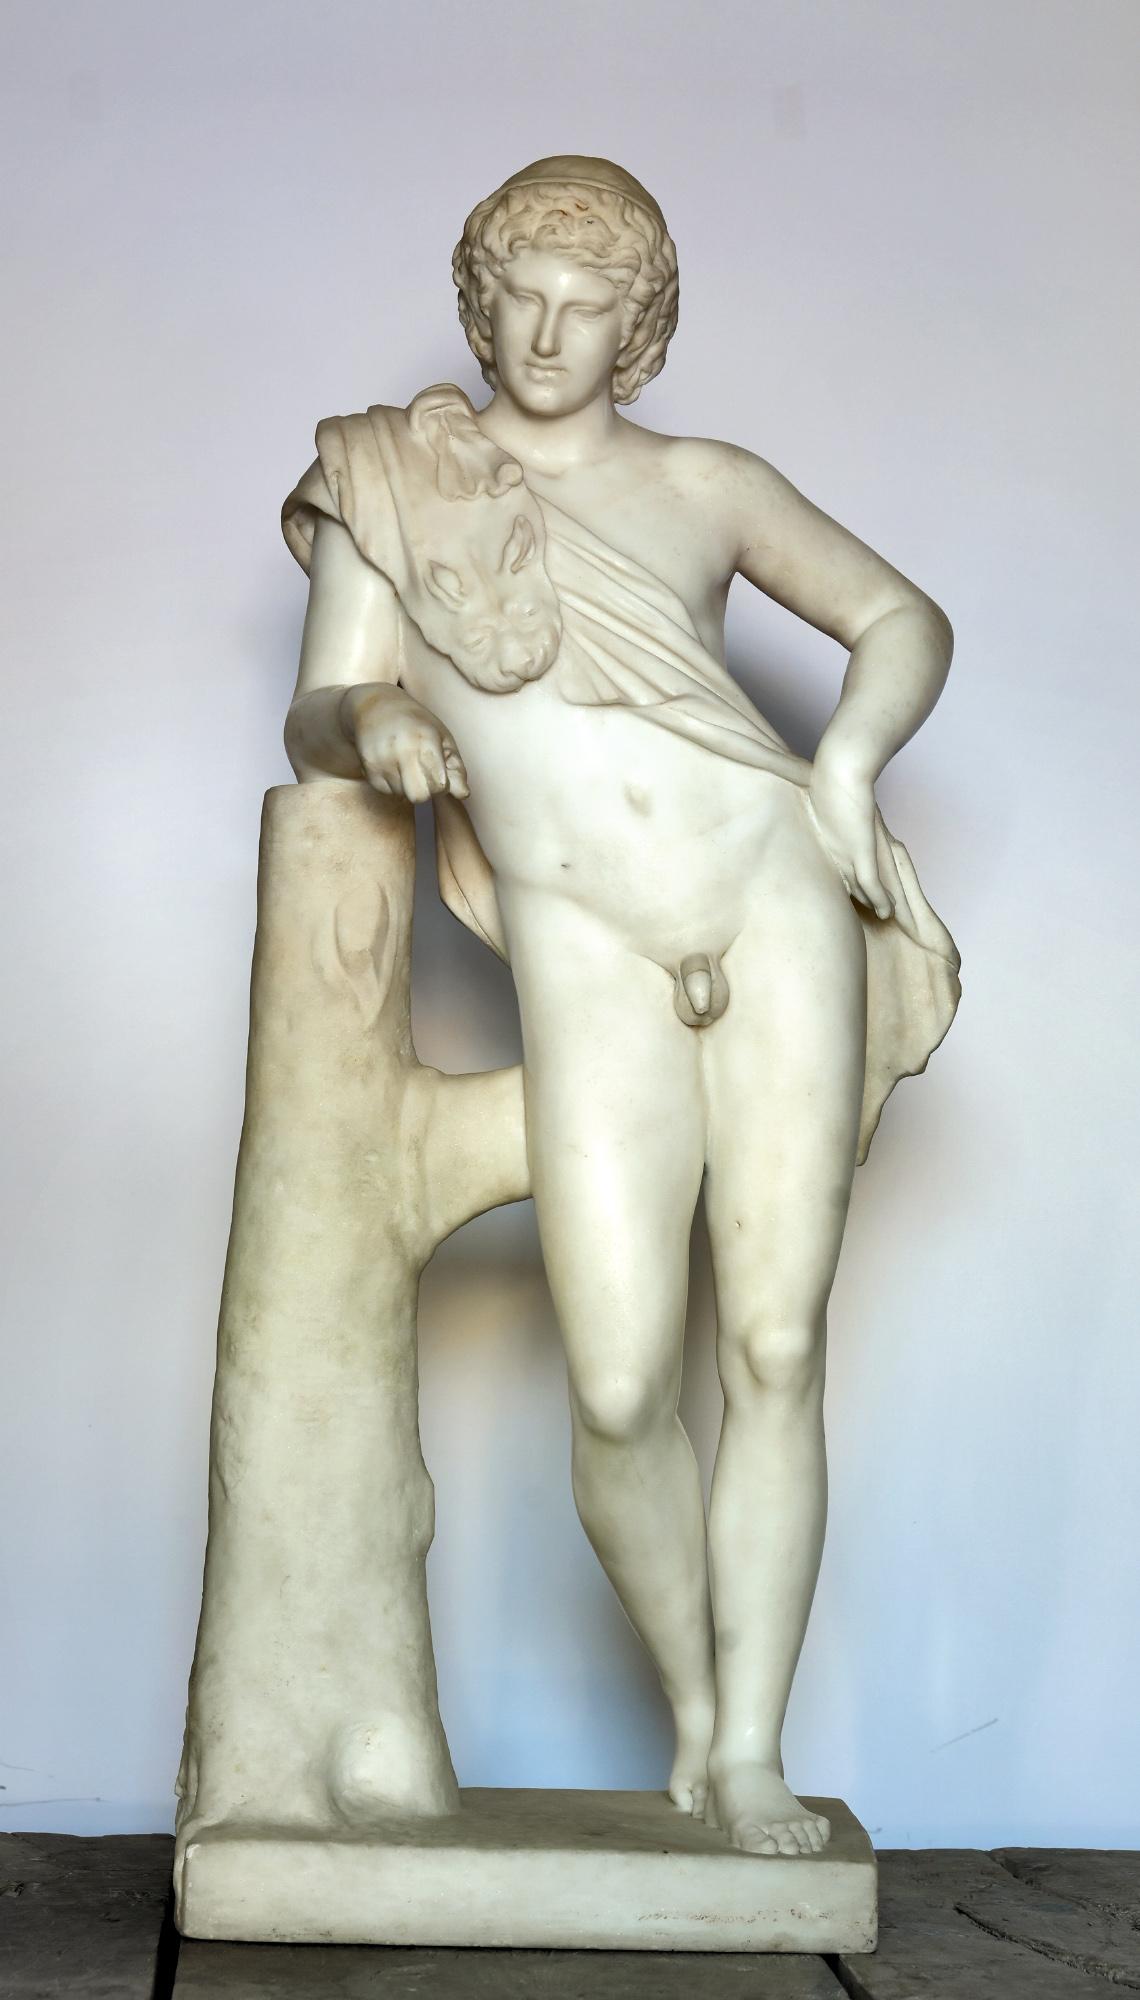 La statue est très fine et de haute qualité en marbre de Carrare. Elle est élaborée vers 1800. Vous pouvez également voir un exemplaire dans les musées du Capitole datant d'environ 130 après J.-C

Le type de statue Satyre au repos montre un jeune